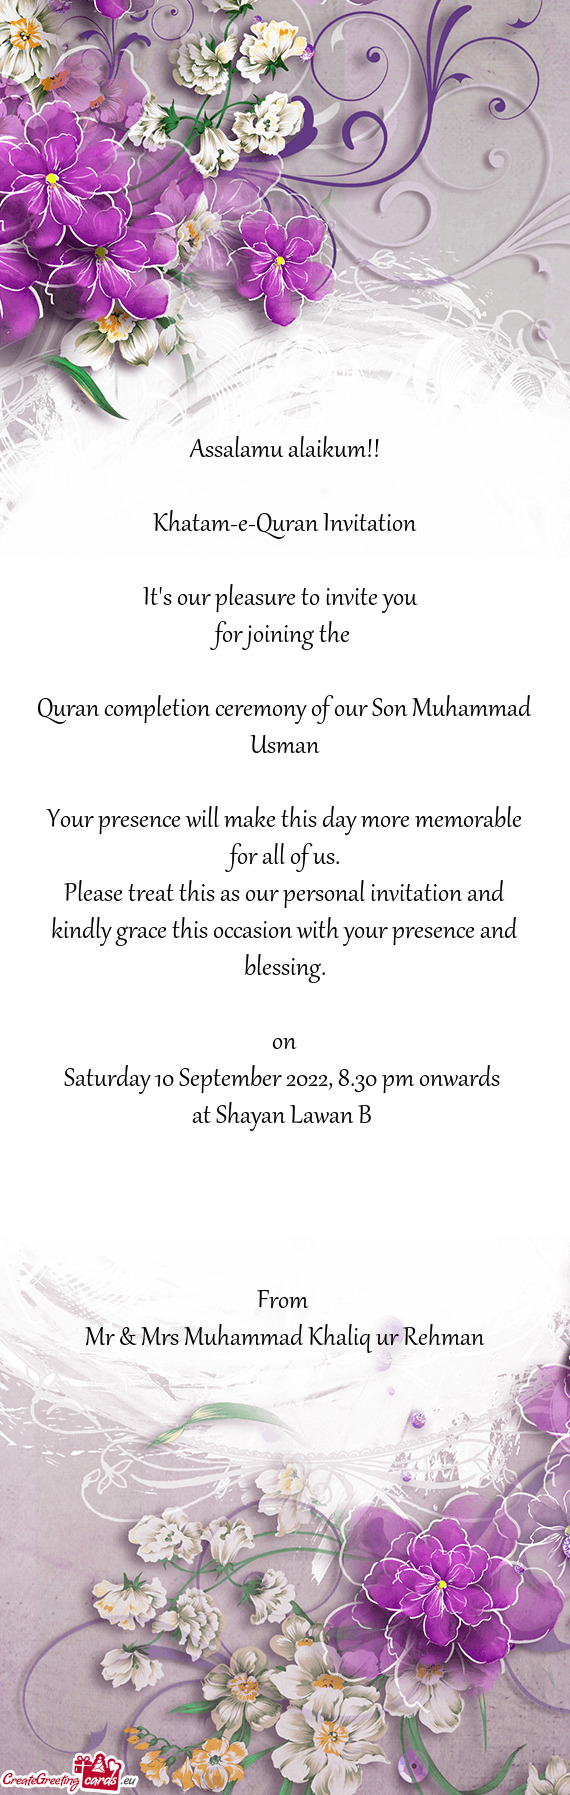 Khatam-e-Quran Invitation